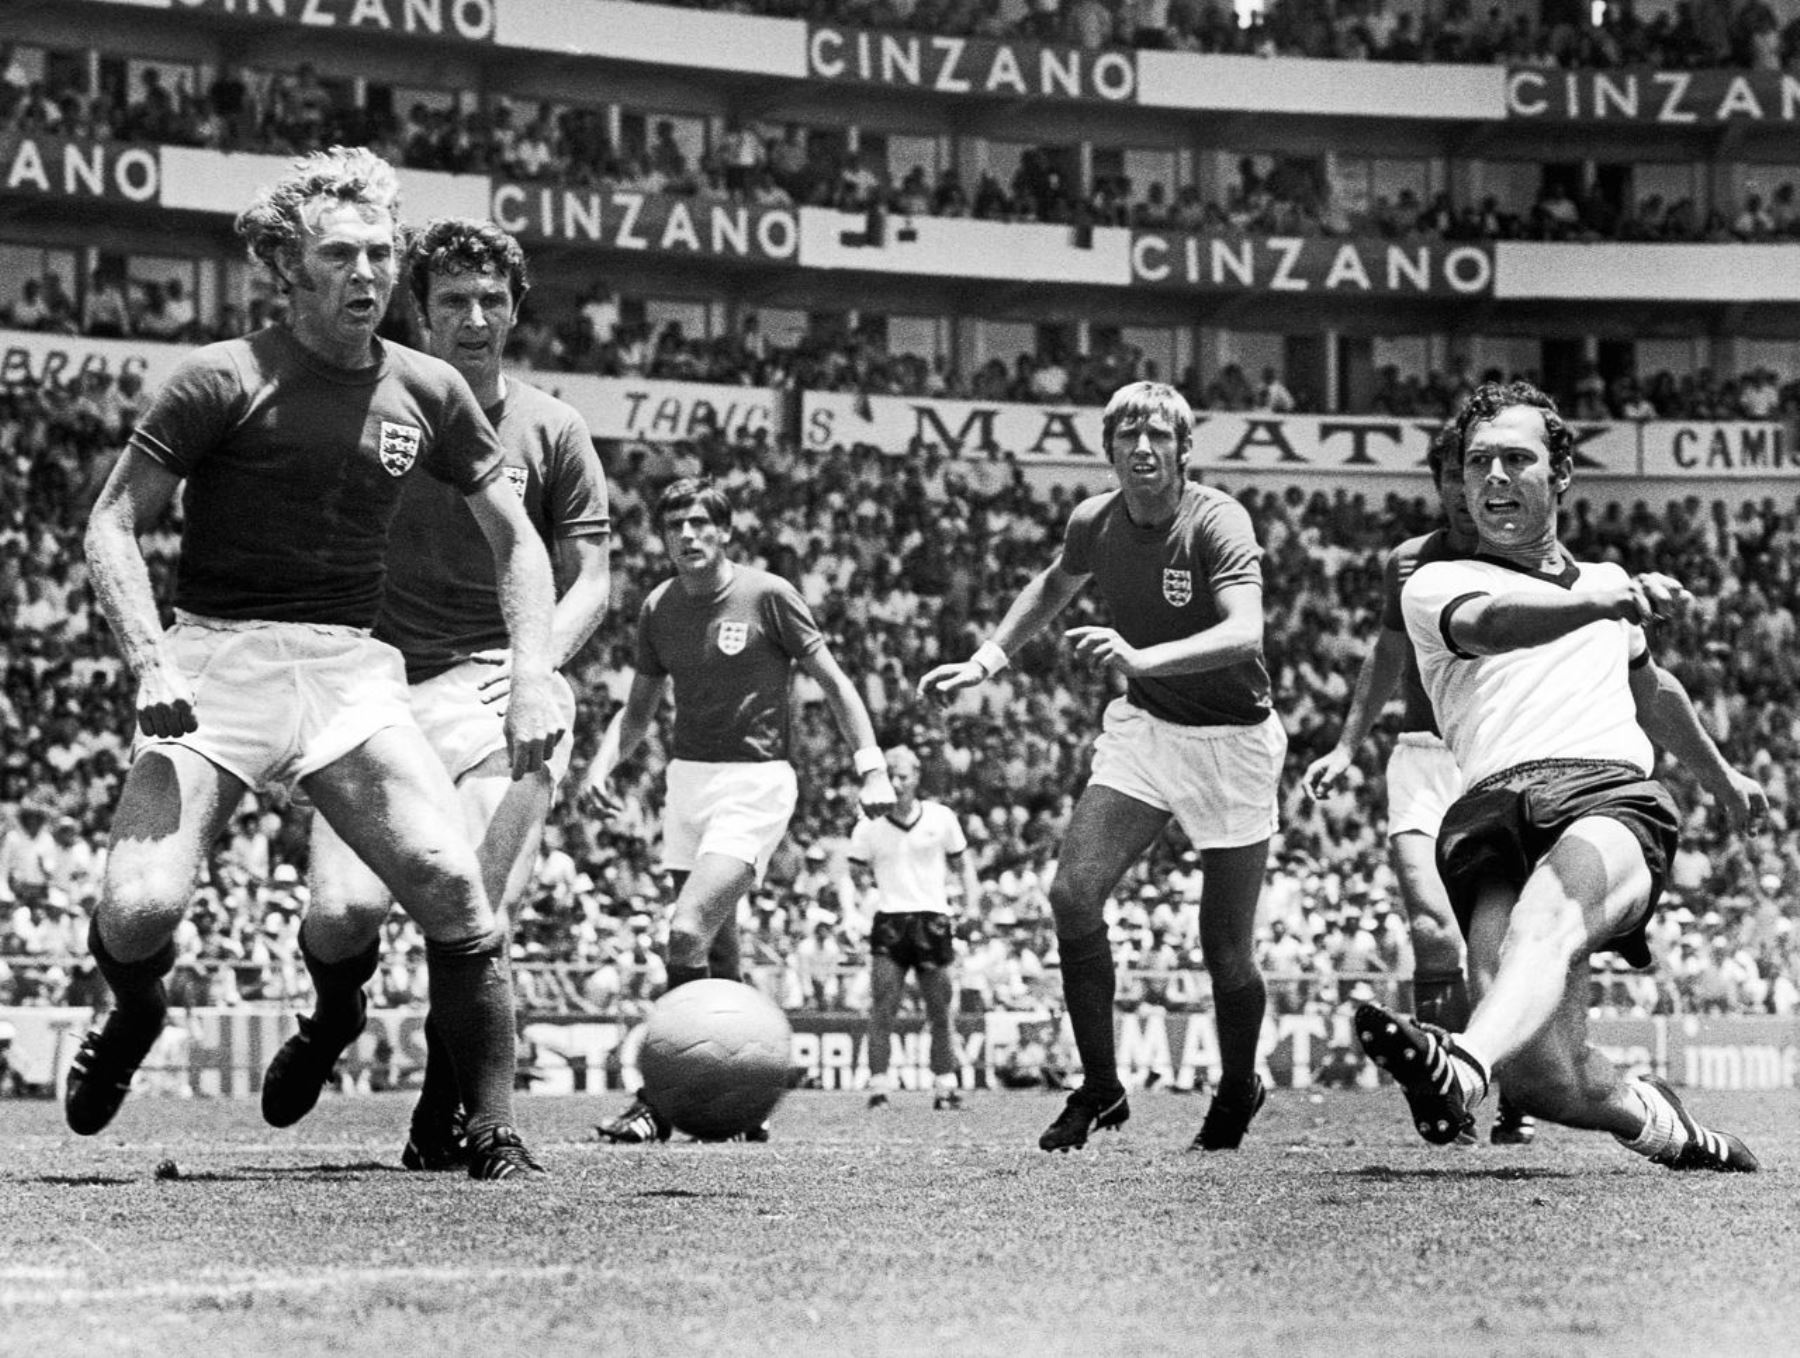 Gerd Müller - República Federal de Alemania. 14 goles en 13 partidos. Participó en los mundiales de 1970 y 1974. Fue campeón en el mundial de 1974 disputado en su país.
 Foto: ANDINA/archivo